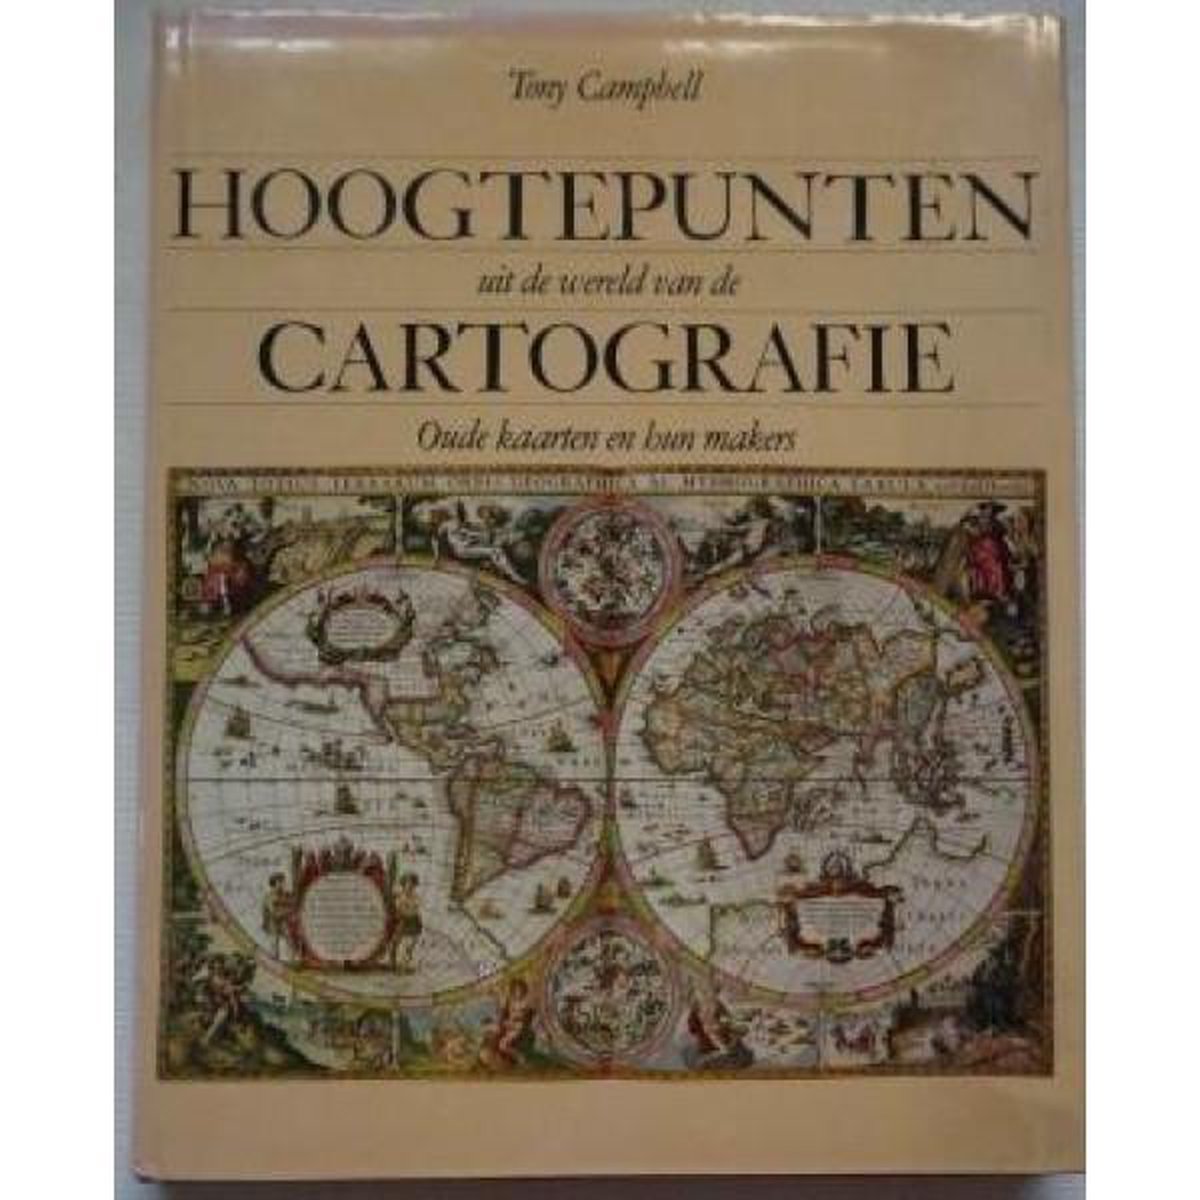 Hoogtepunten uit de wereld van de cartografie : oude kaarten en hun makers